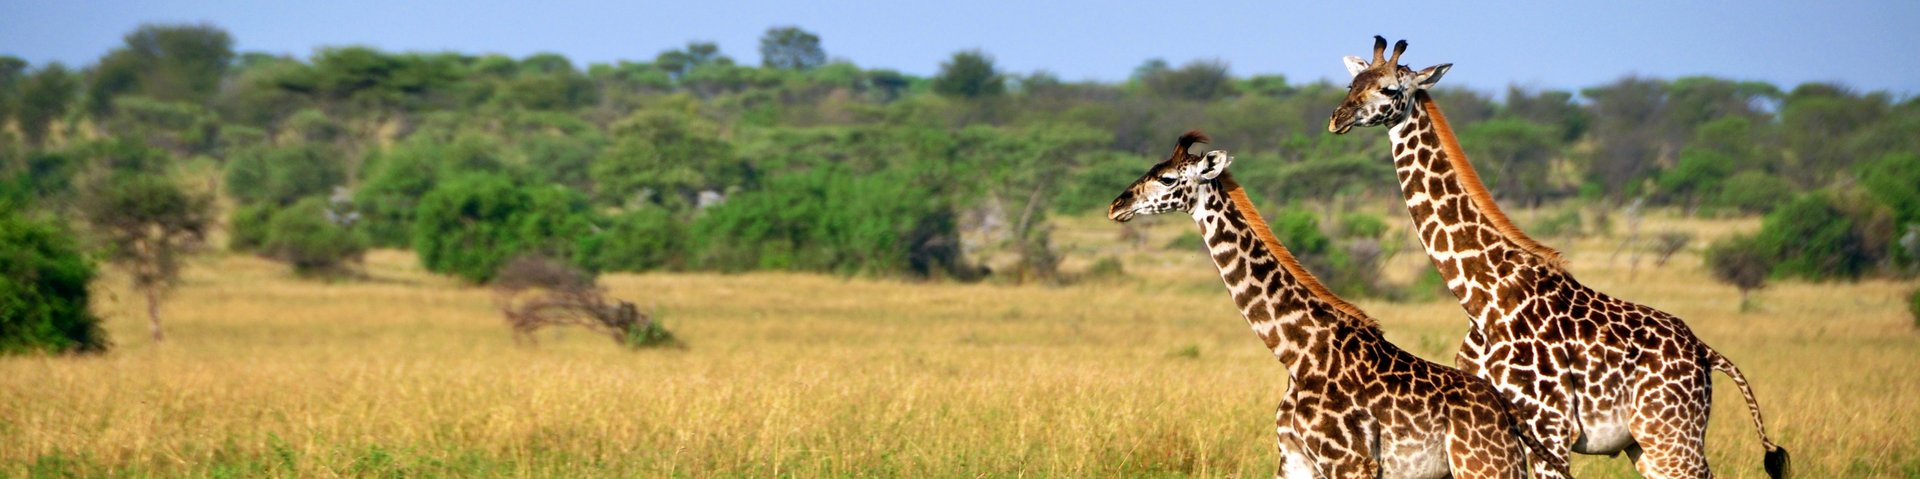 Zwei Giraffen unterwegs in der Steppe von Kenia